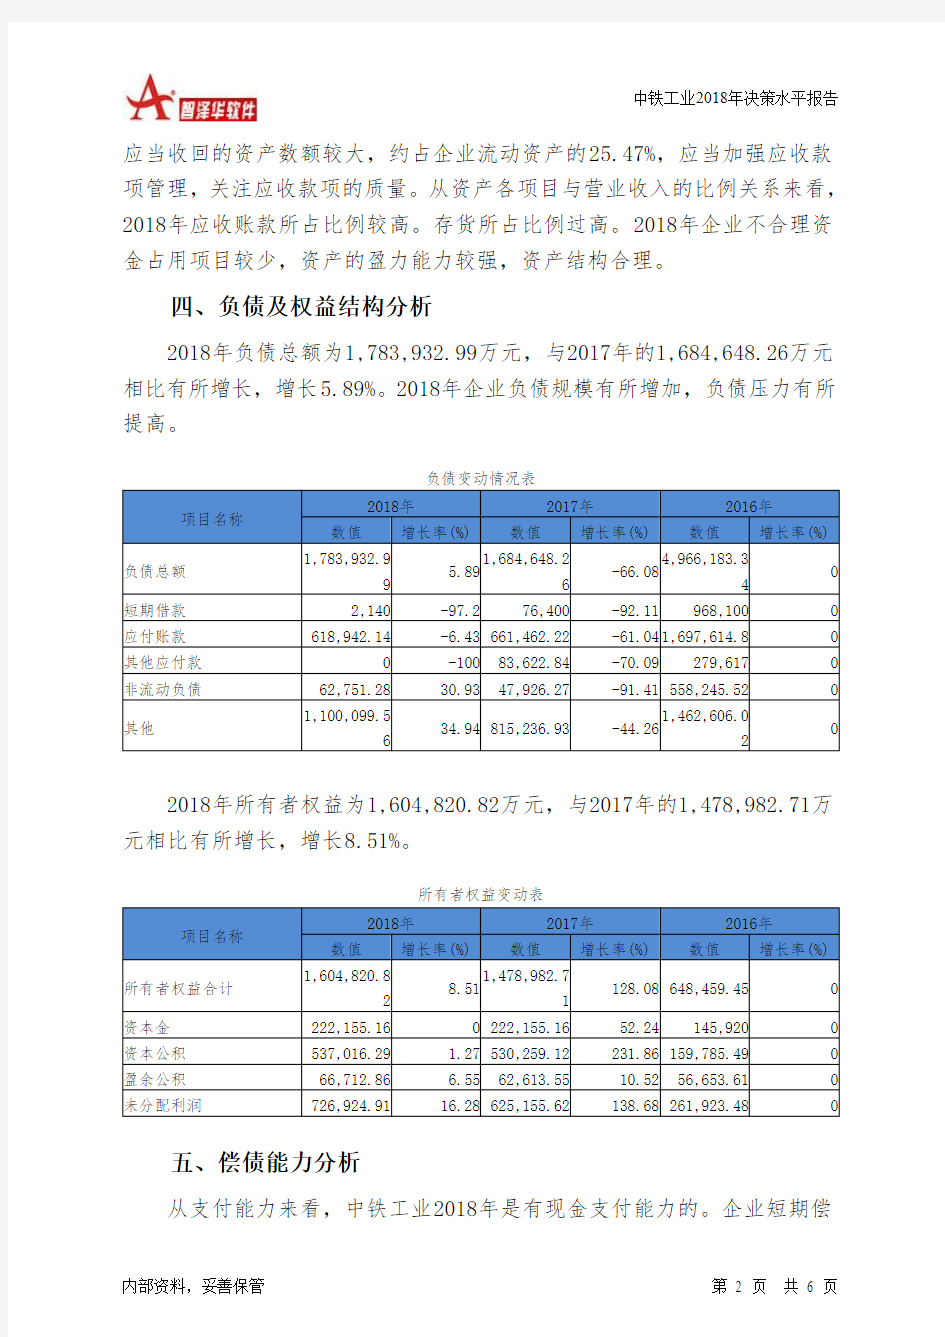 中铁工业2018年决策水平分析报告-智泽华